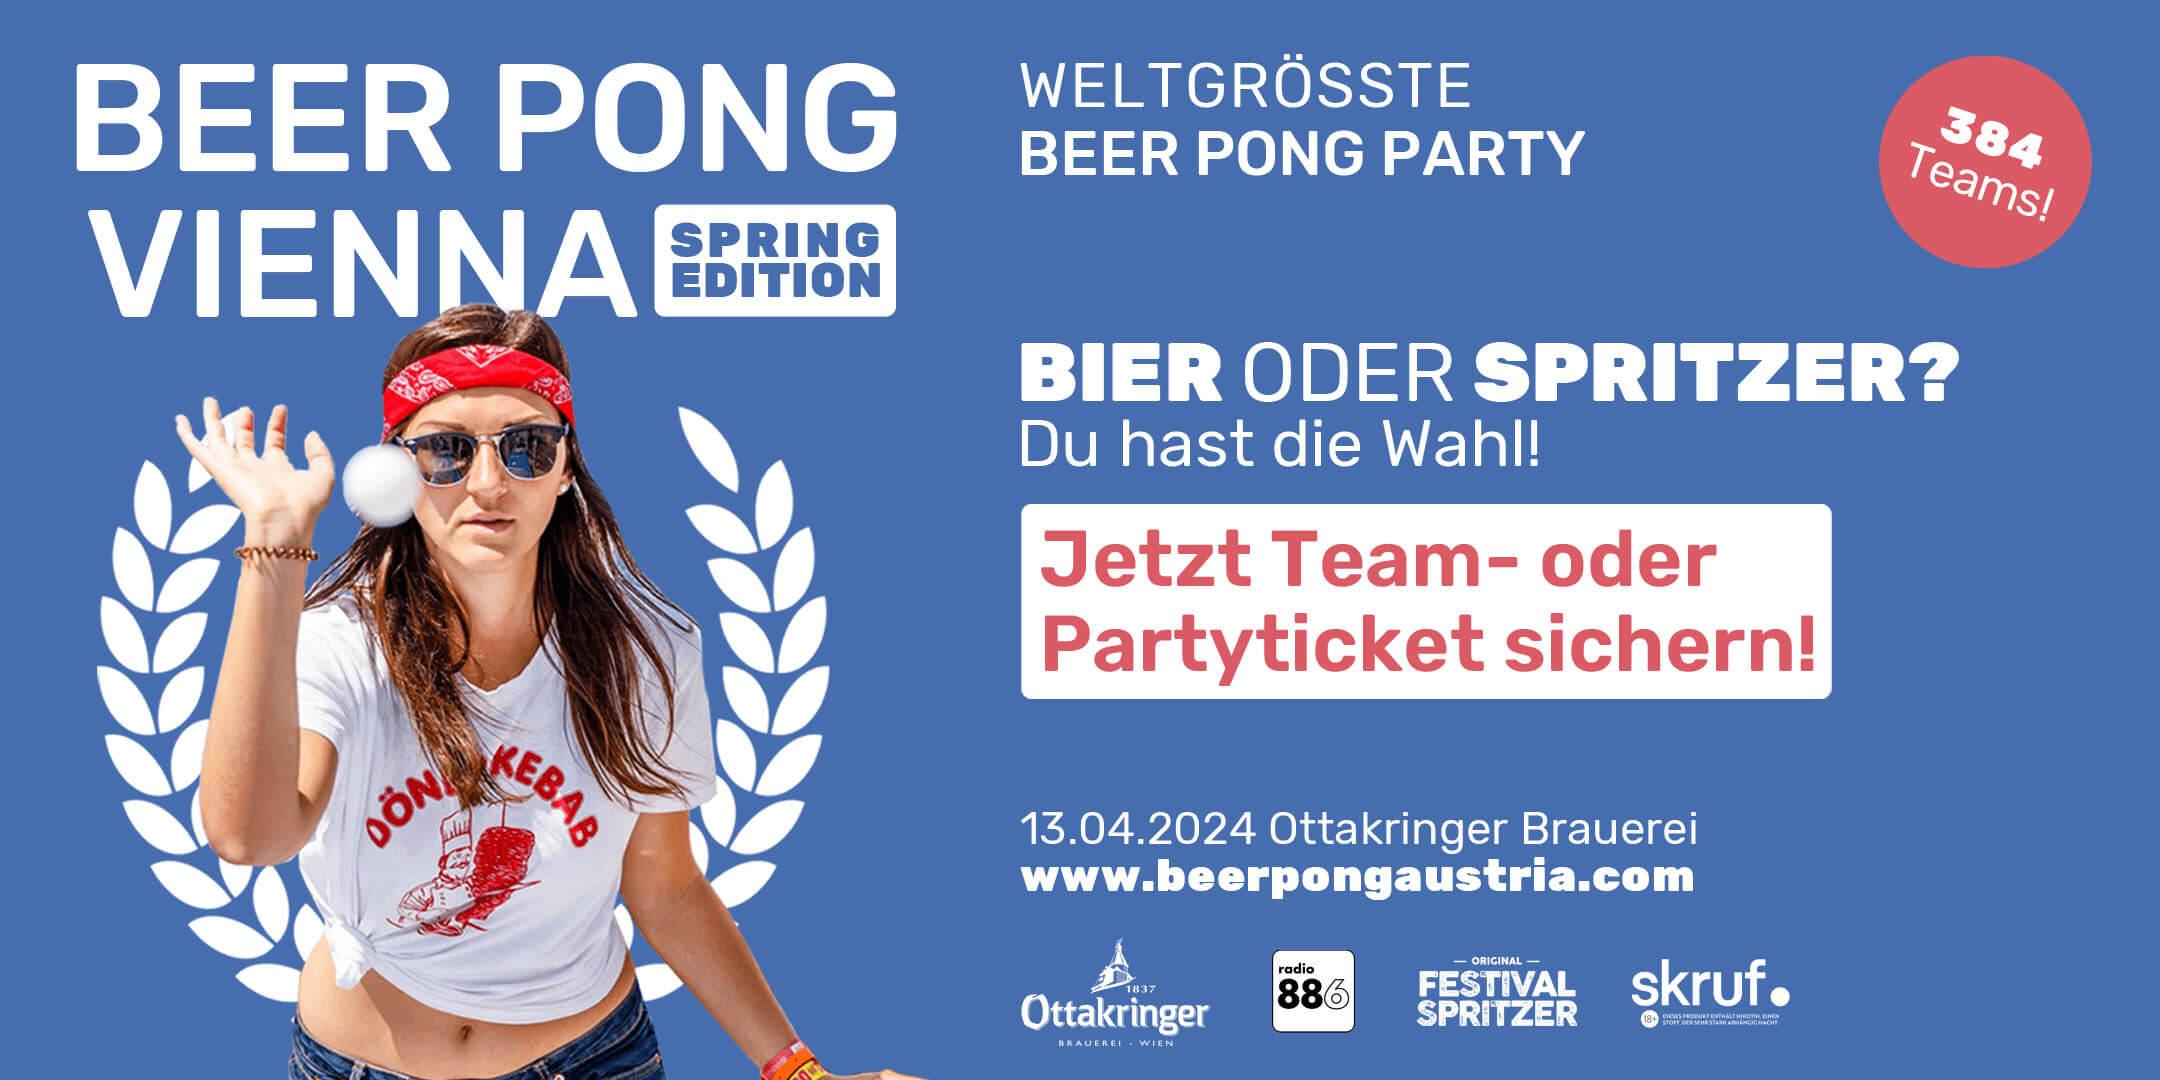 Beer Pong Vienna